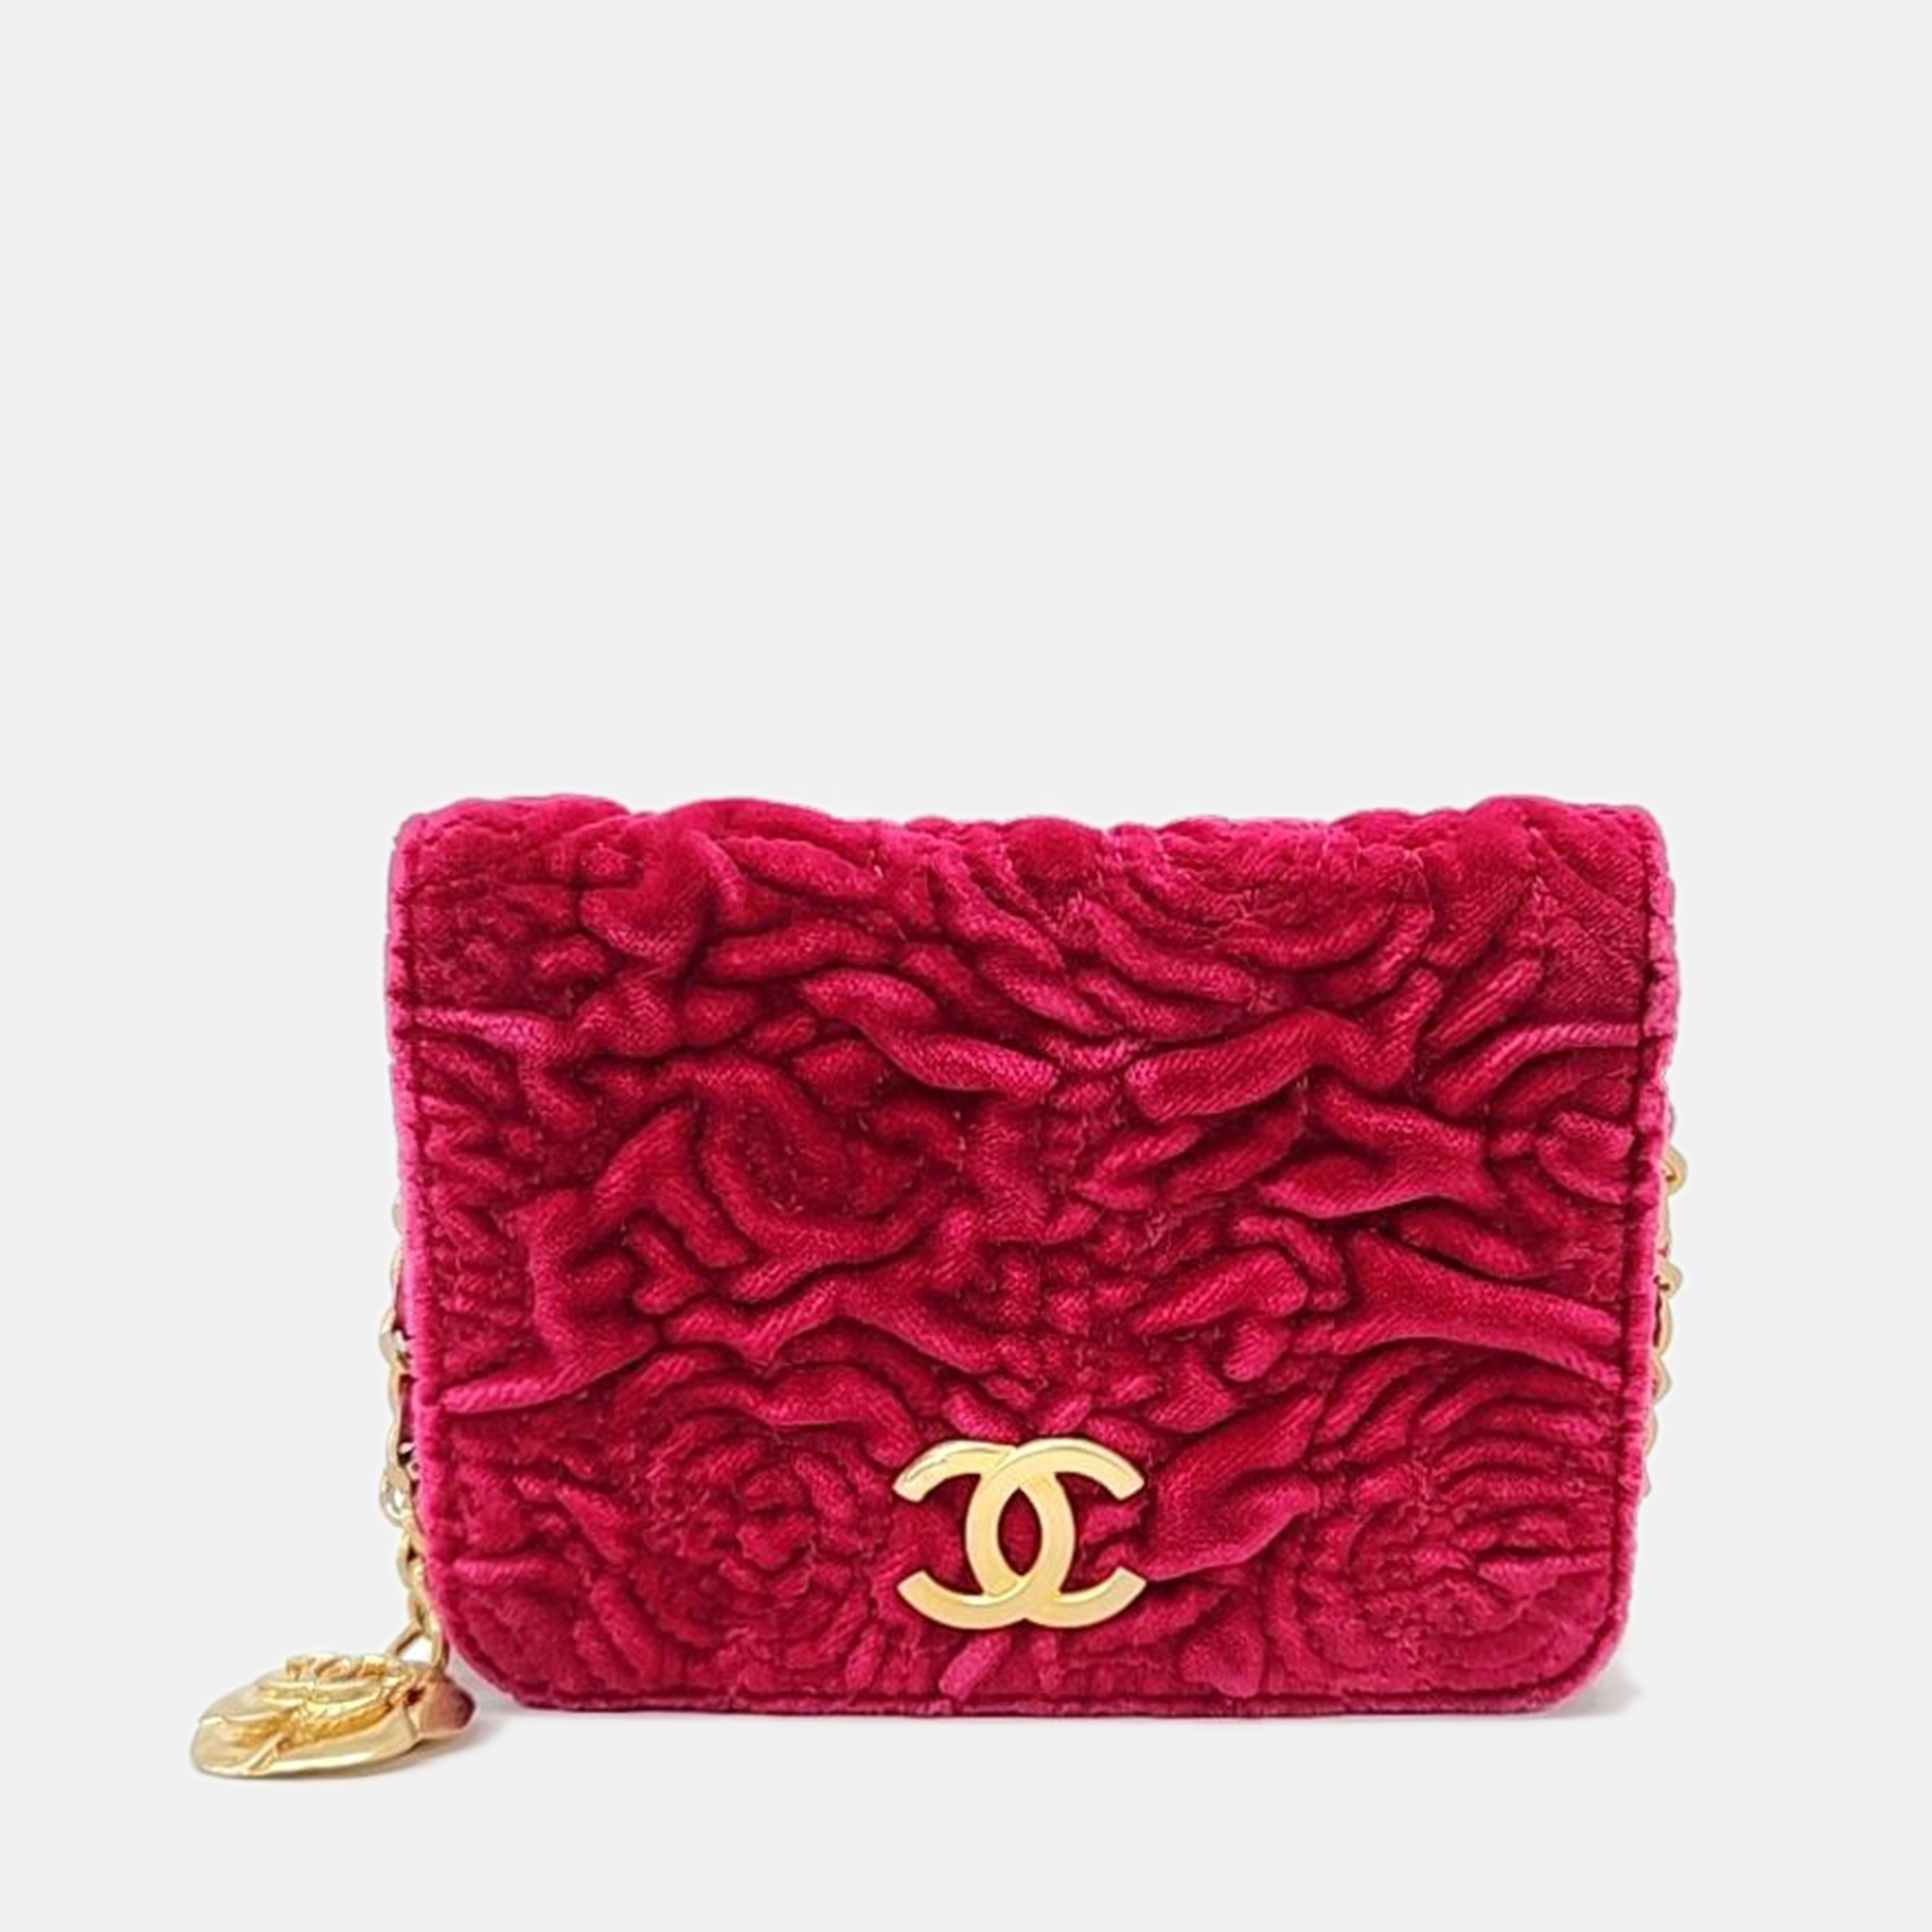 Chanel red velvet mini cross bag